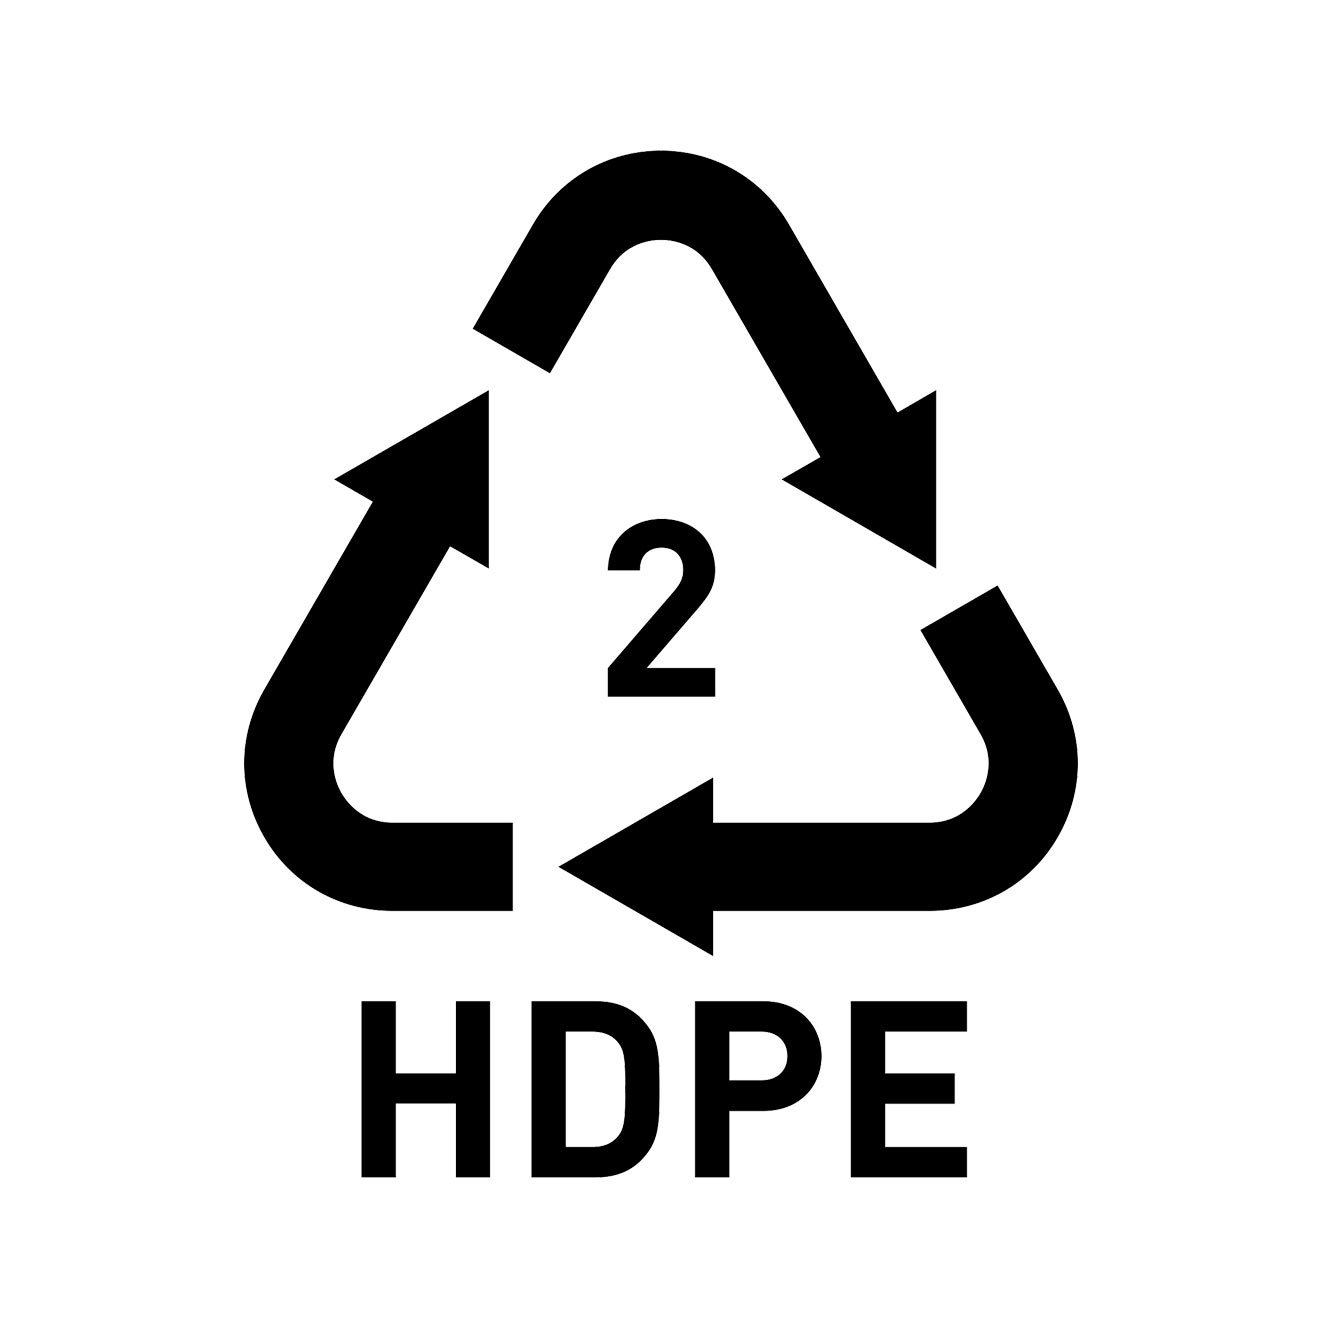 High-density (HDPE)